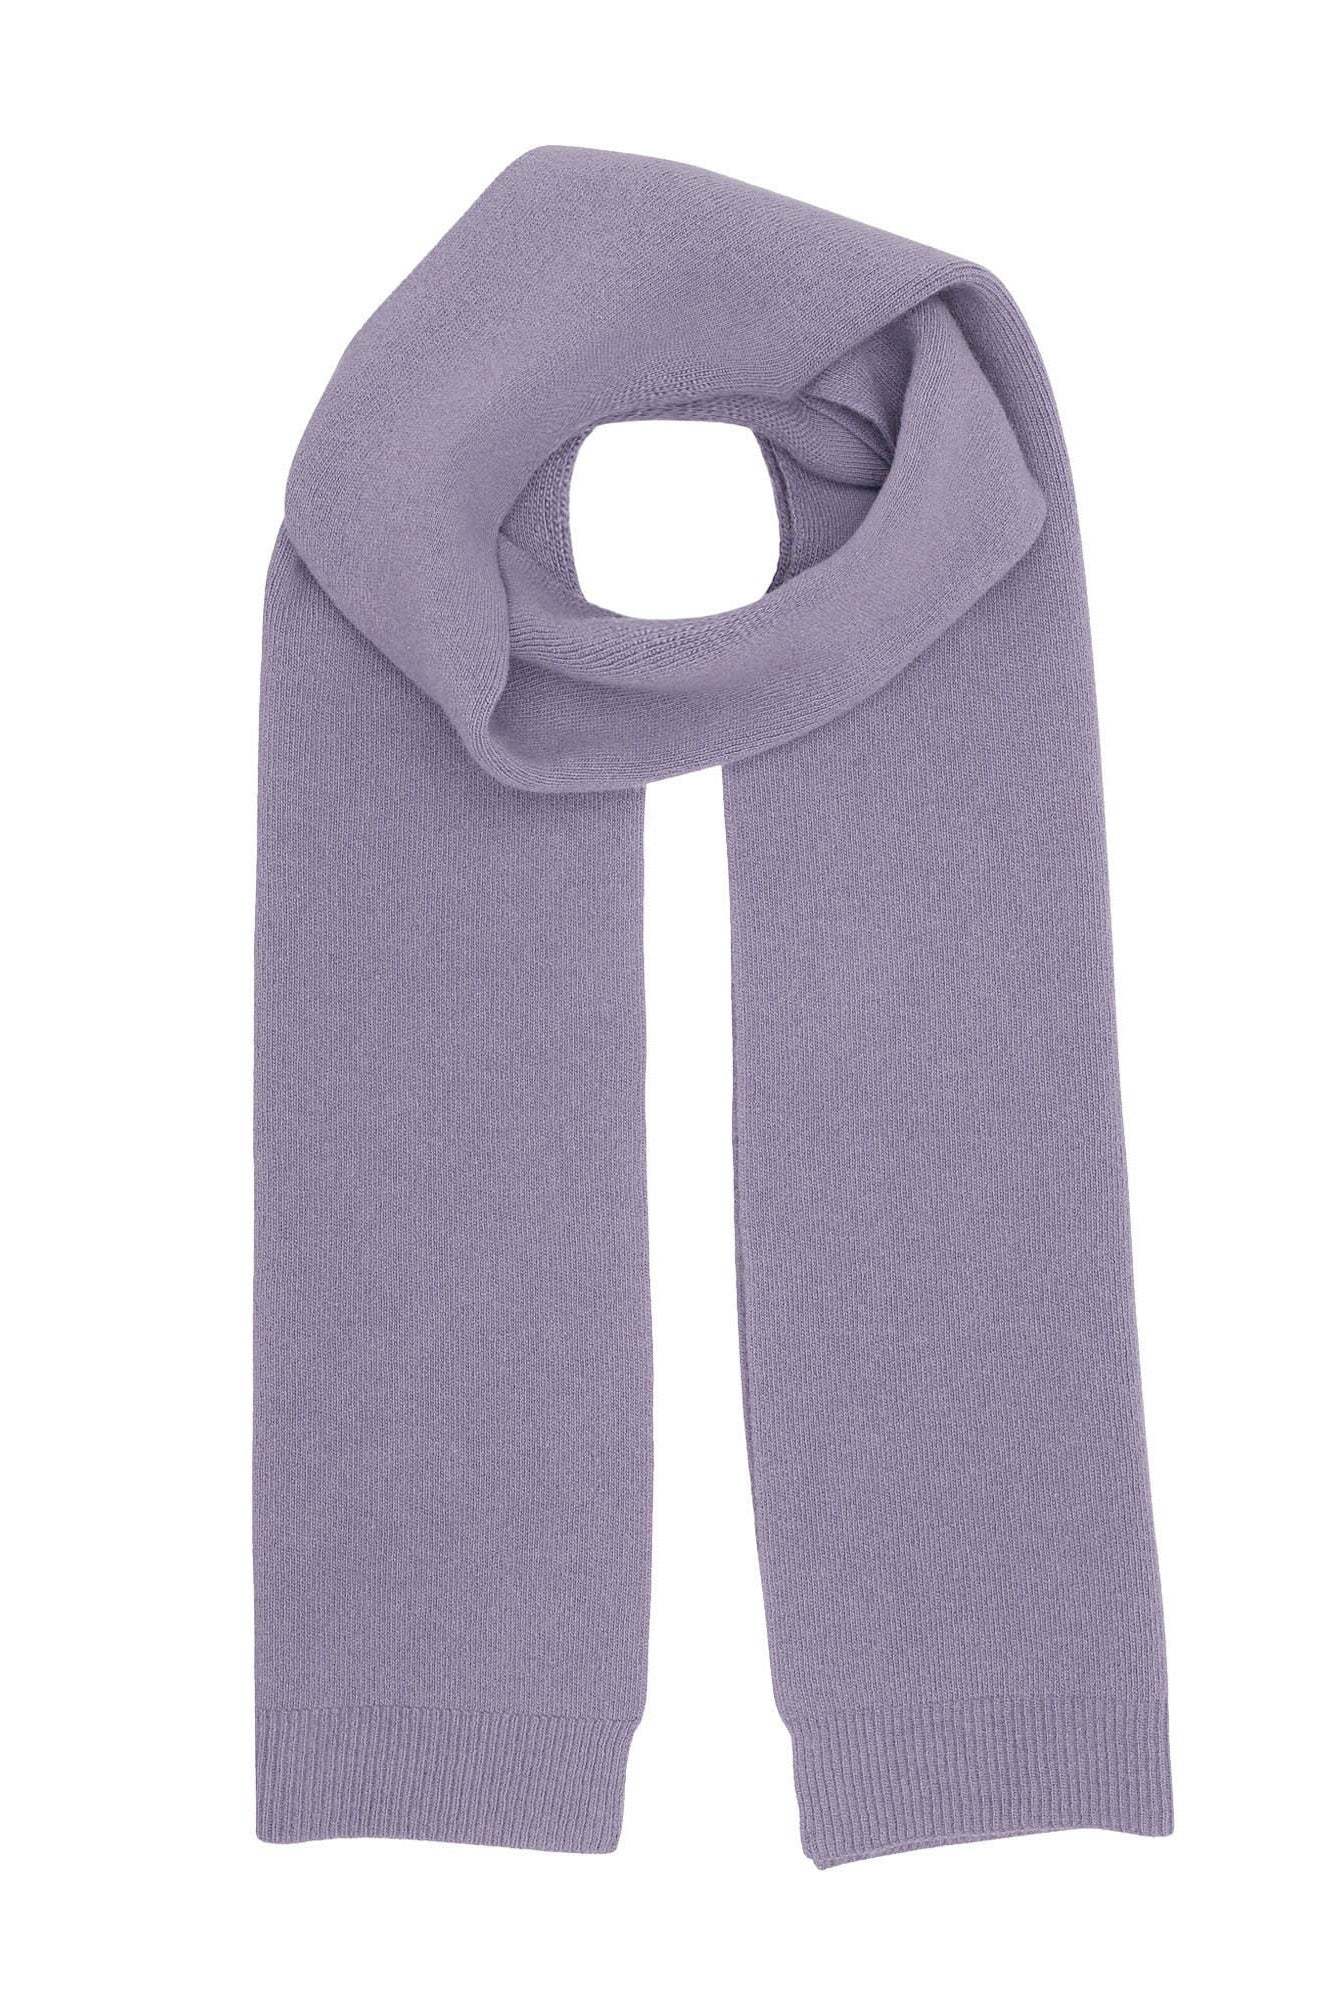 Schal aus recycelter, extrafeiner Merinowolle von Colorful Standard CS 5082 blass lila grau purple haze